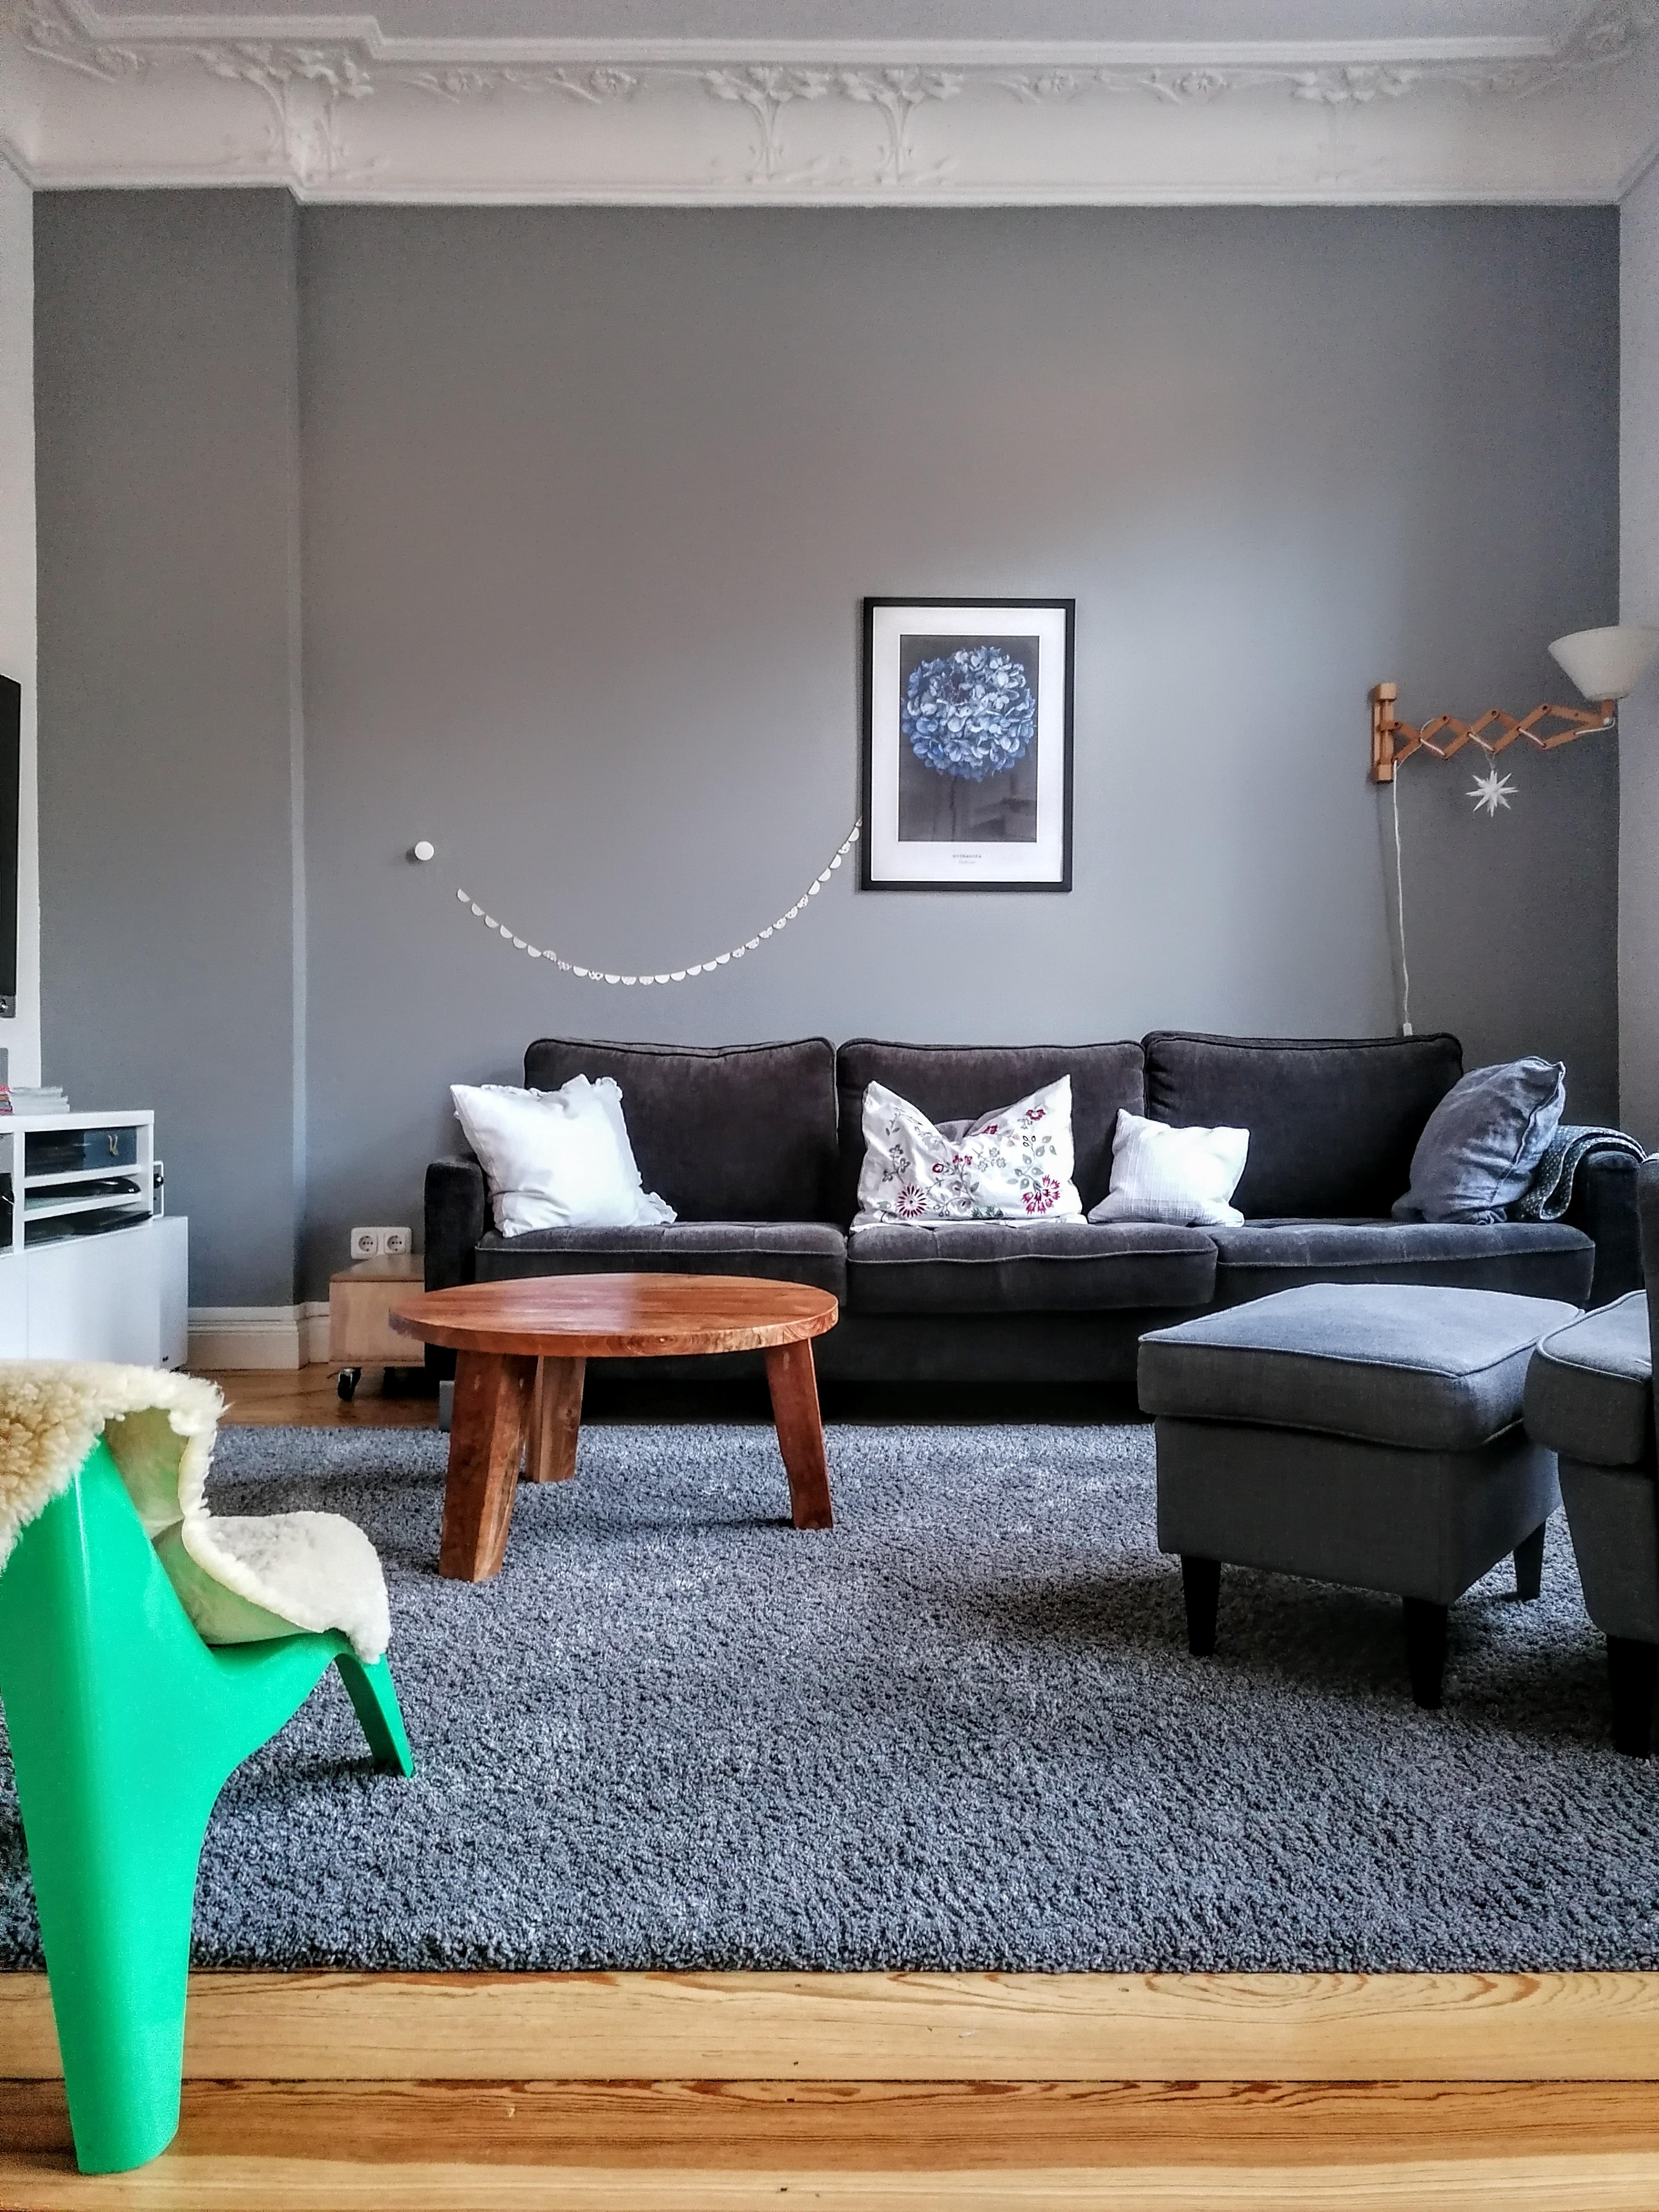 Cozy
#wohnzimmer #couch #girlande #altbau #altbauliebe #graueWand